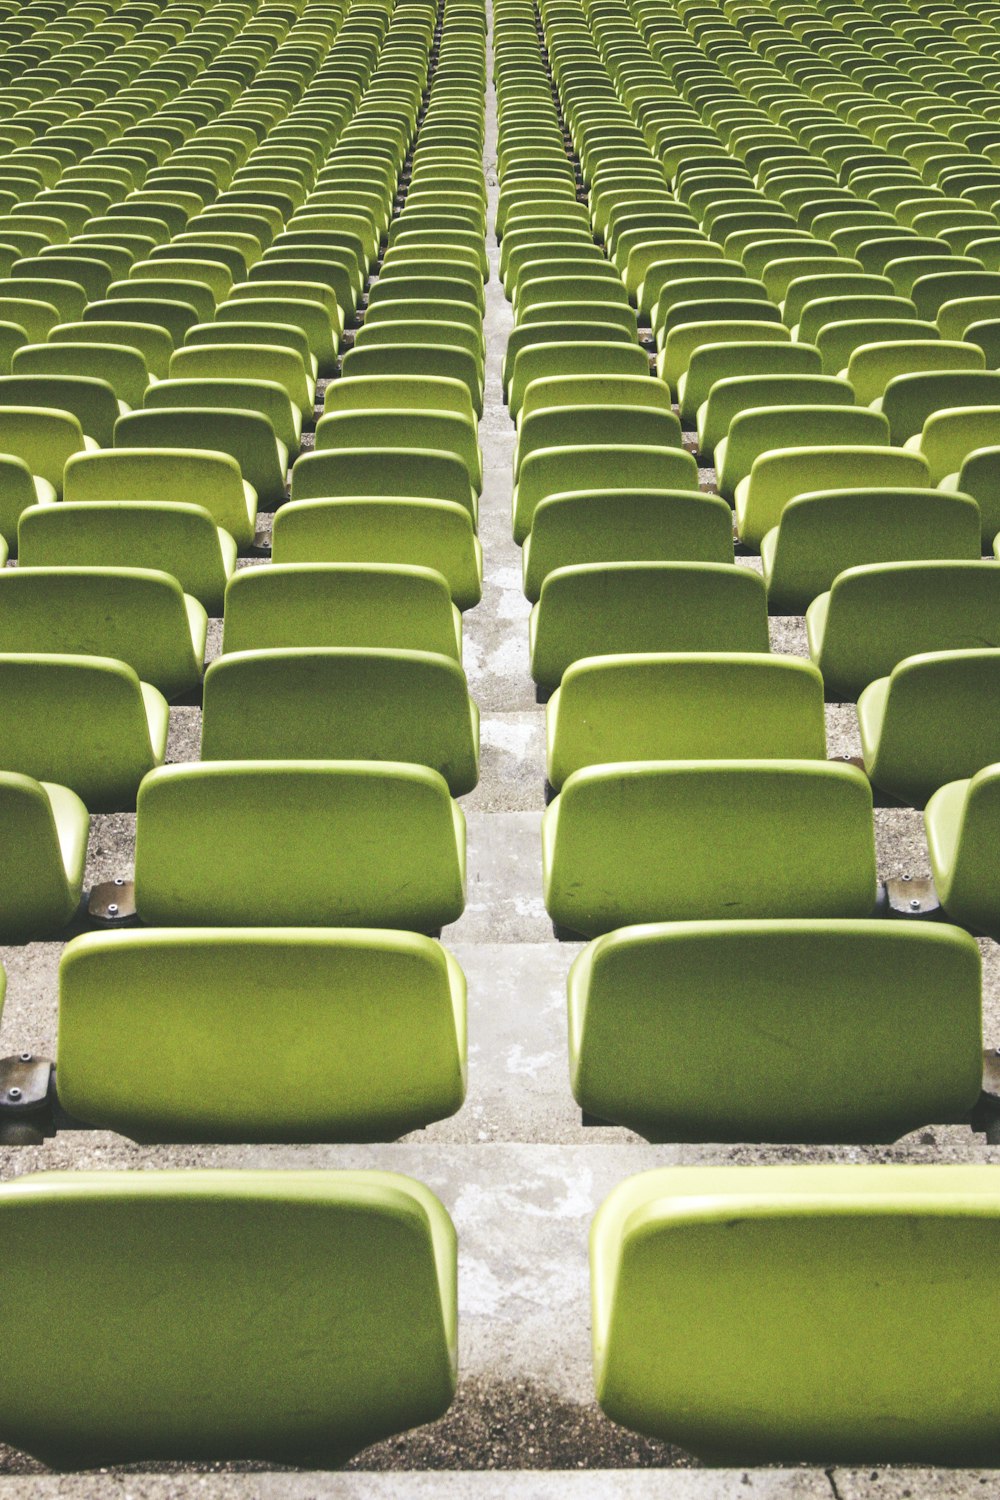 lotto di sedie per campi sportivi verdi durante il giorno